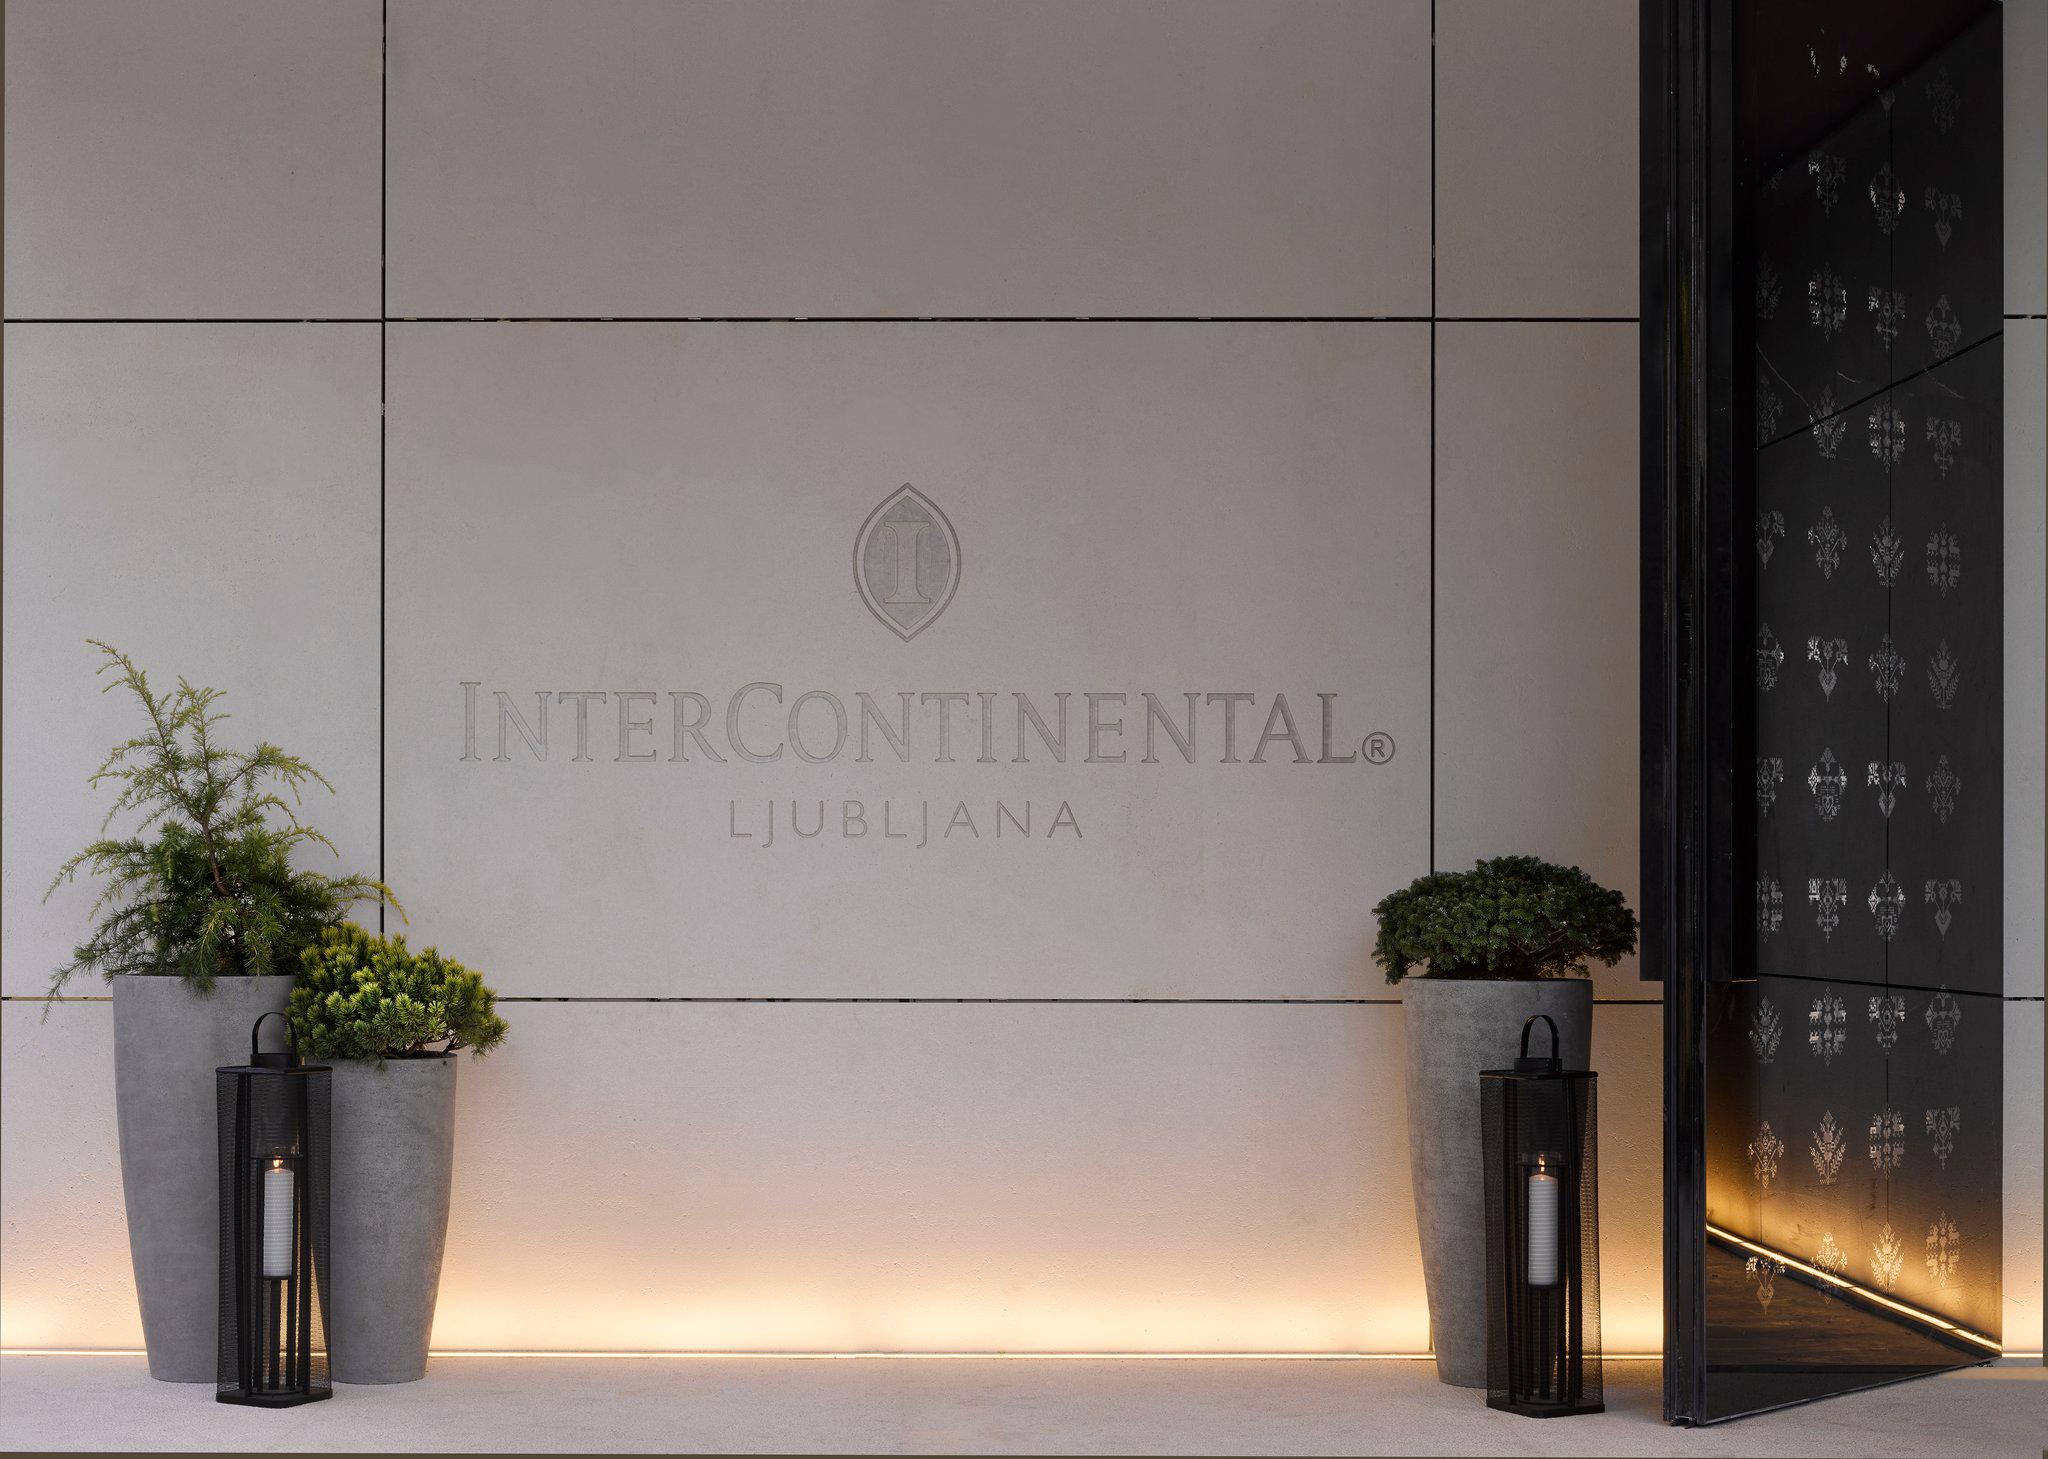 InterContinental Ljubljana, an IHG Hotel